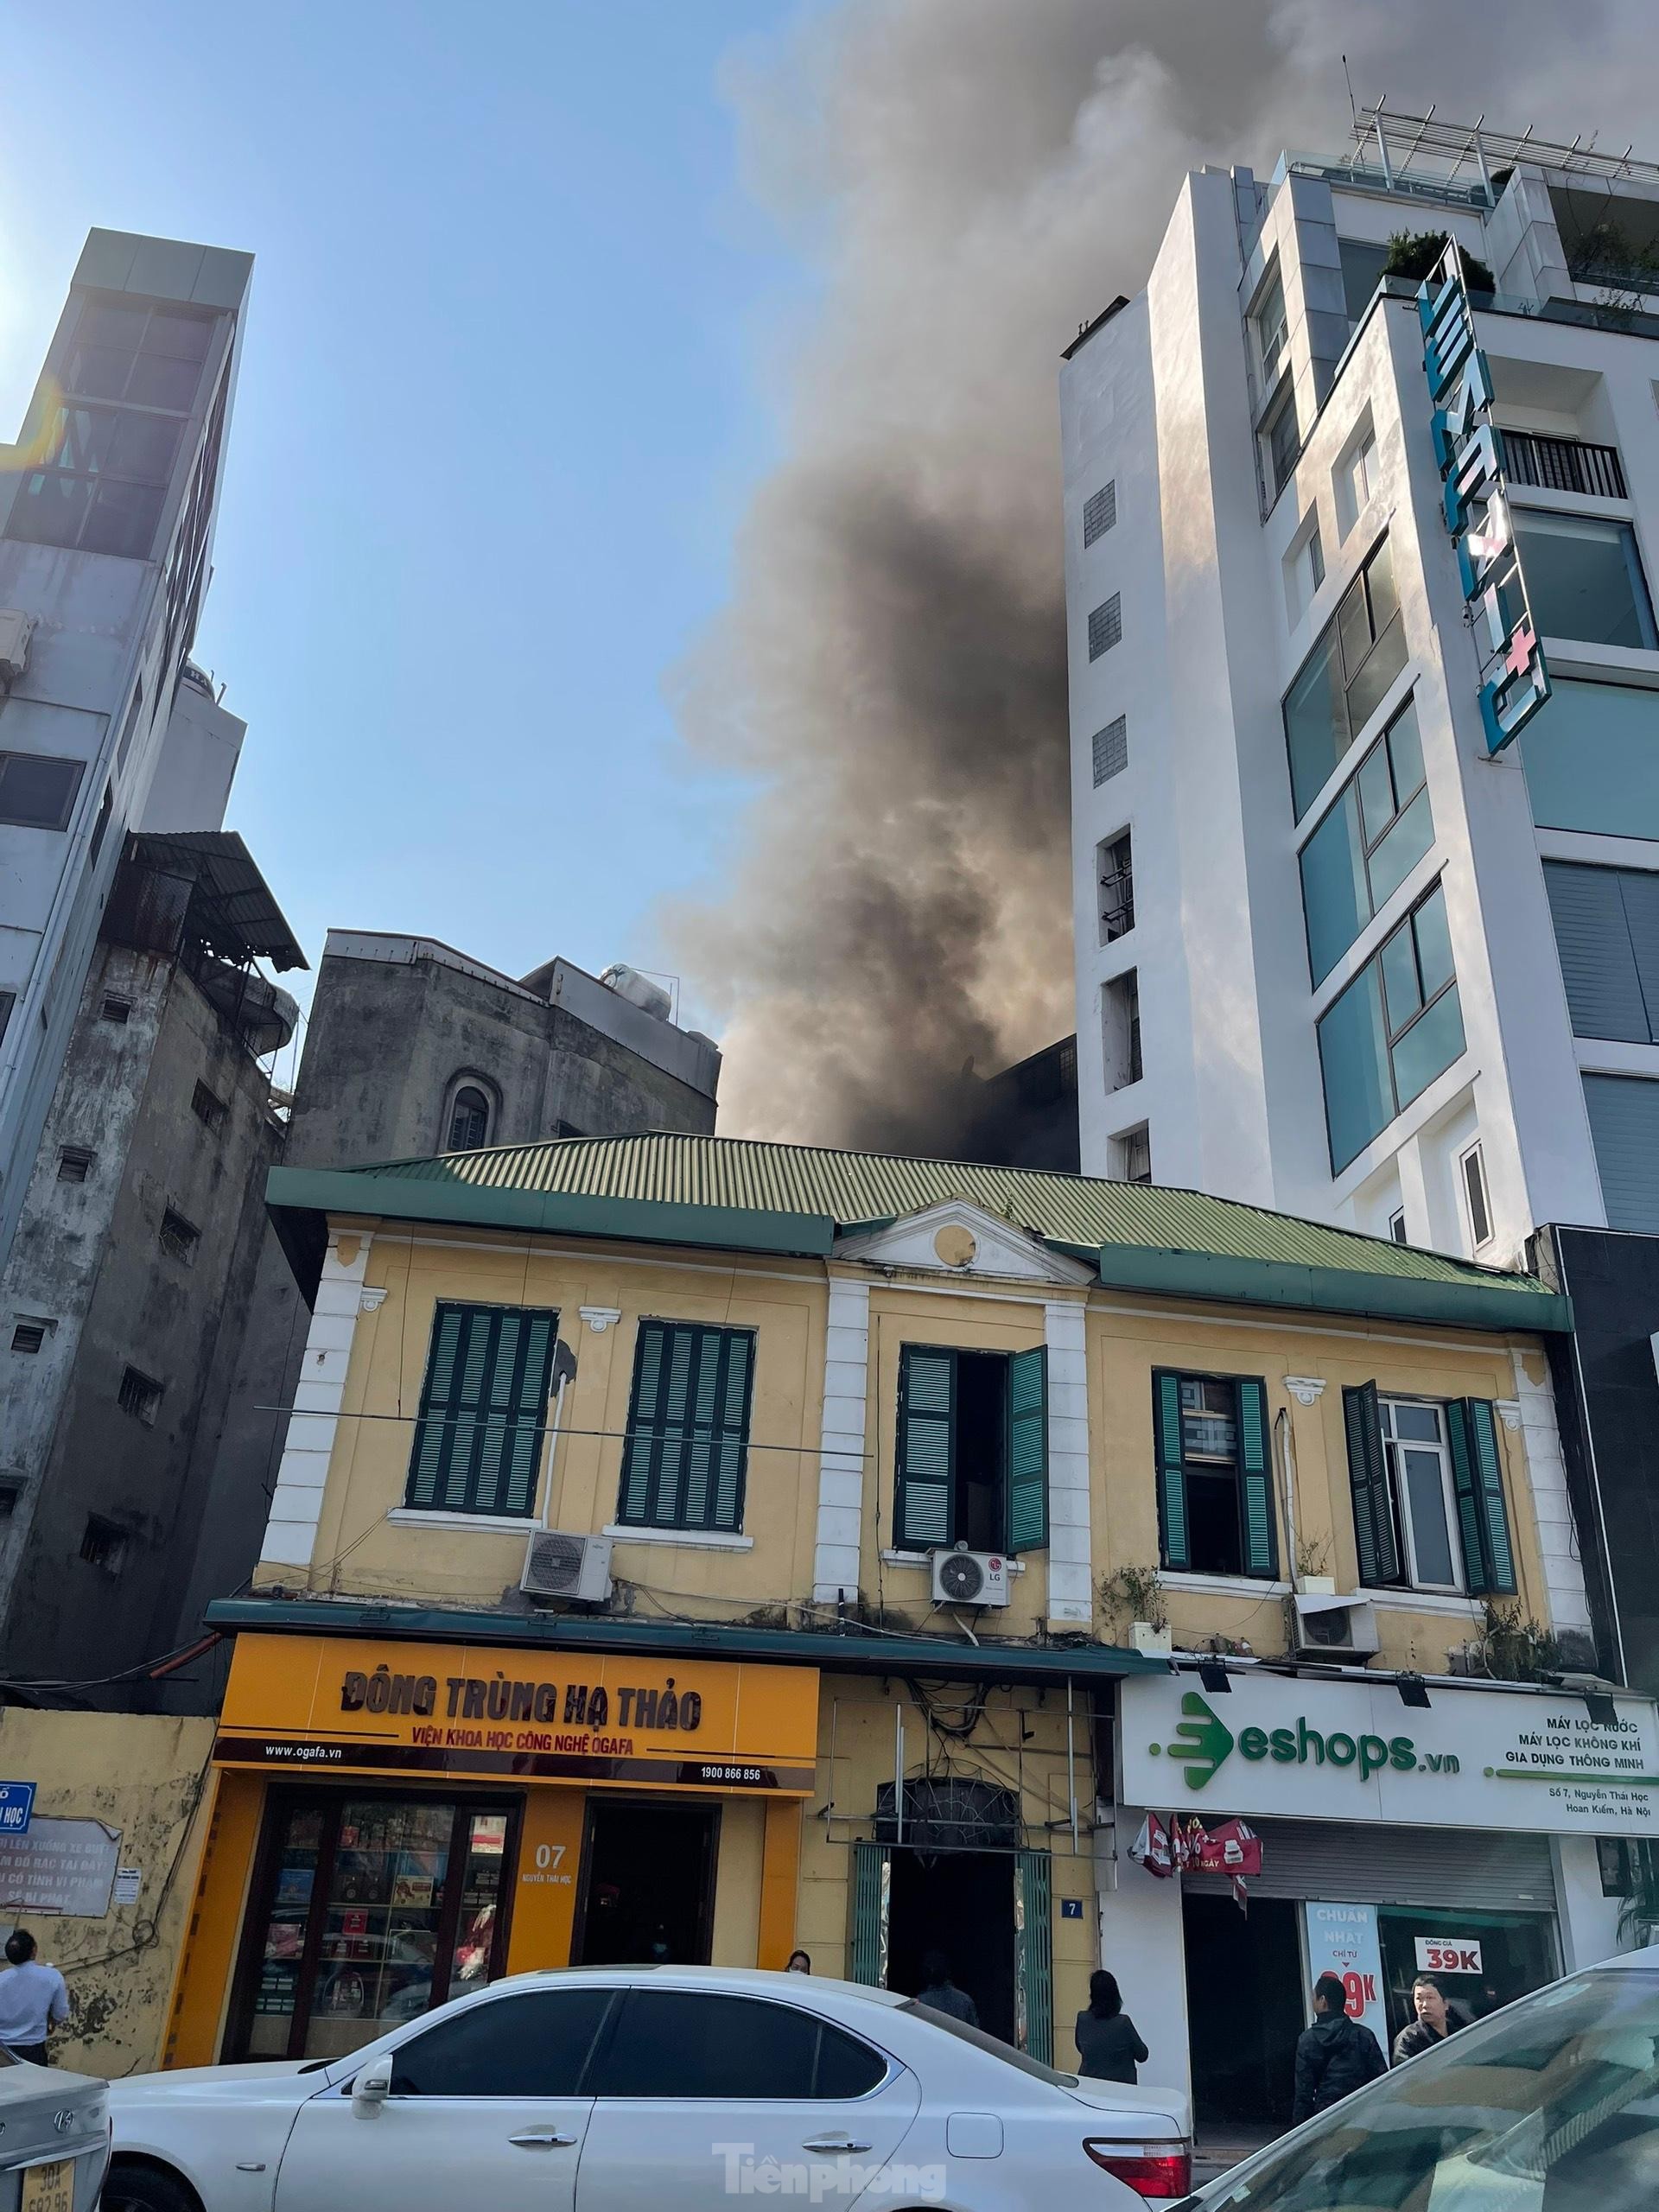 Đang cháy lớn trên phố Hà Nội, khói bốc nghi ngút, người dân ôm tài sản bỏ chạy - Ảnh 2.